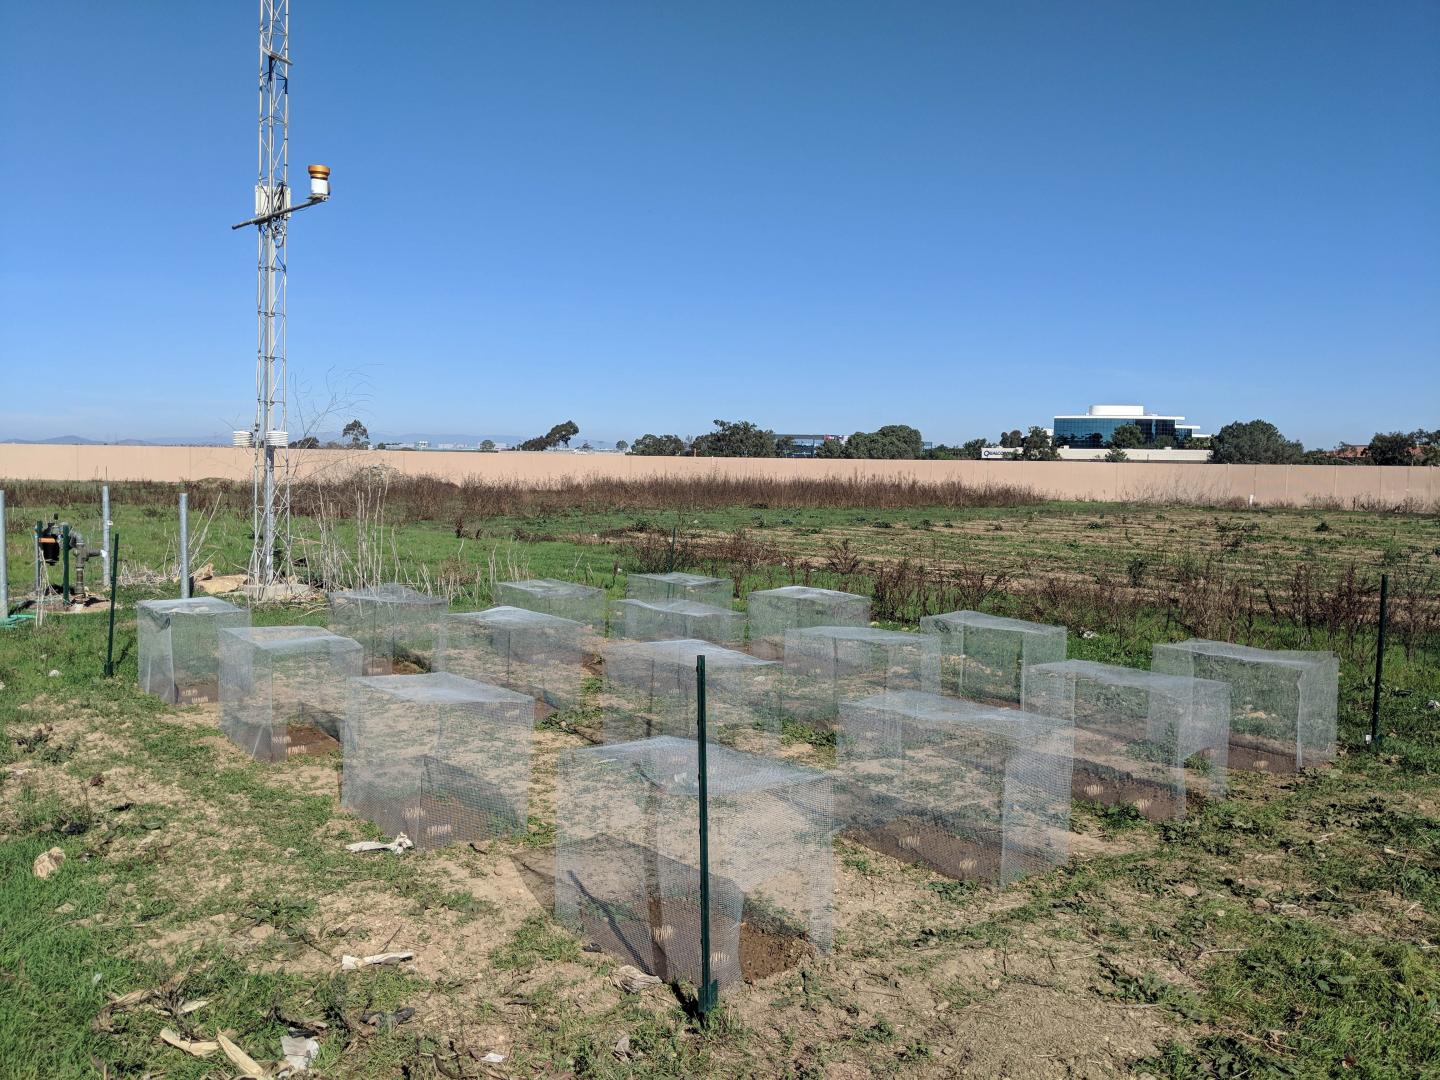 Grass plot experiments